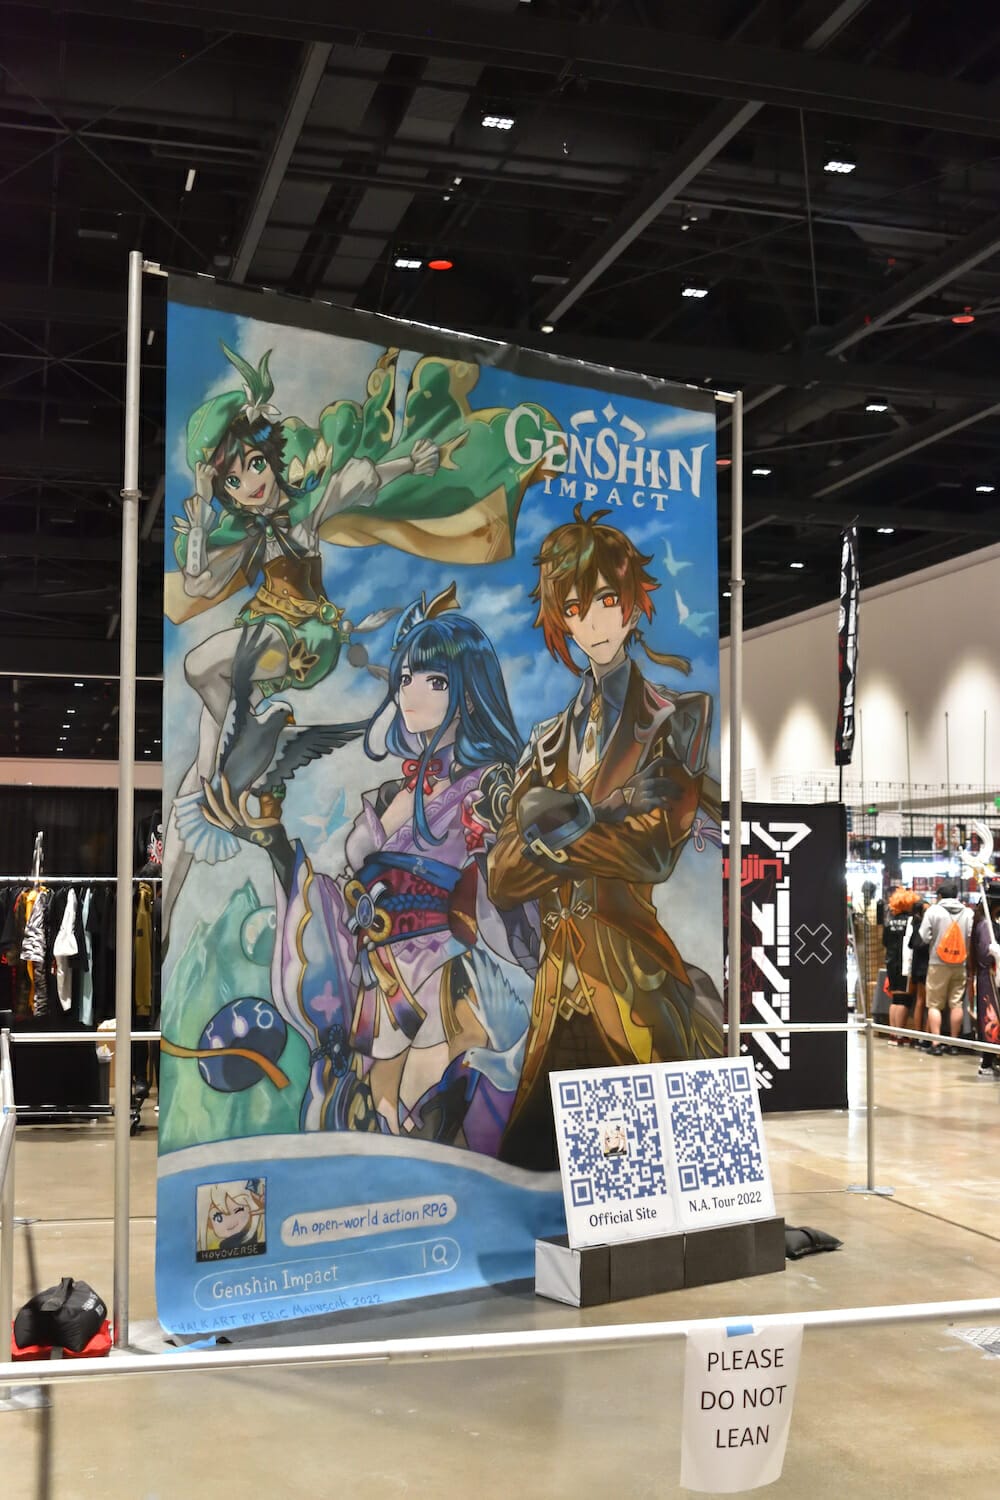 Crunchyroll Expo on X: Calling all Anime Artists! 🎨 Crunchyroll